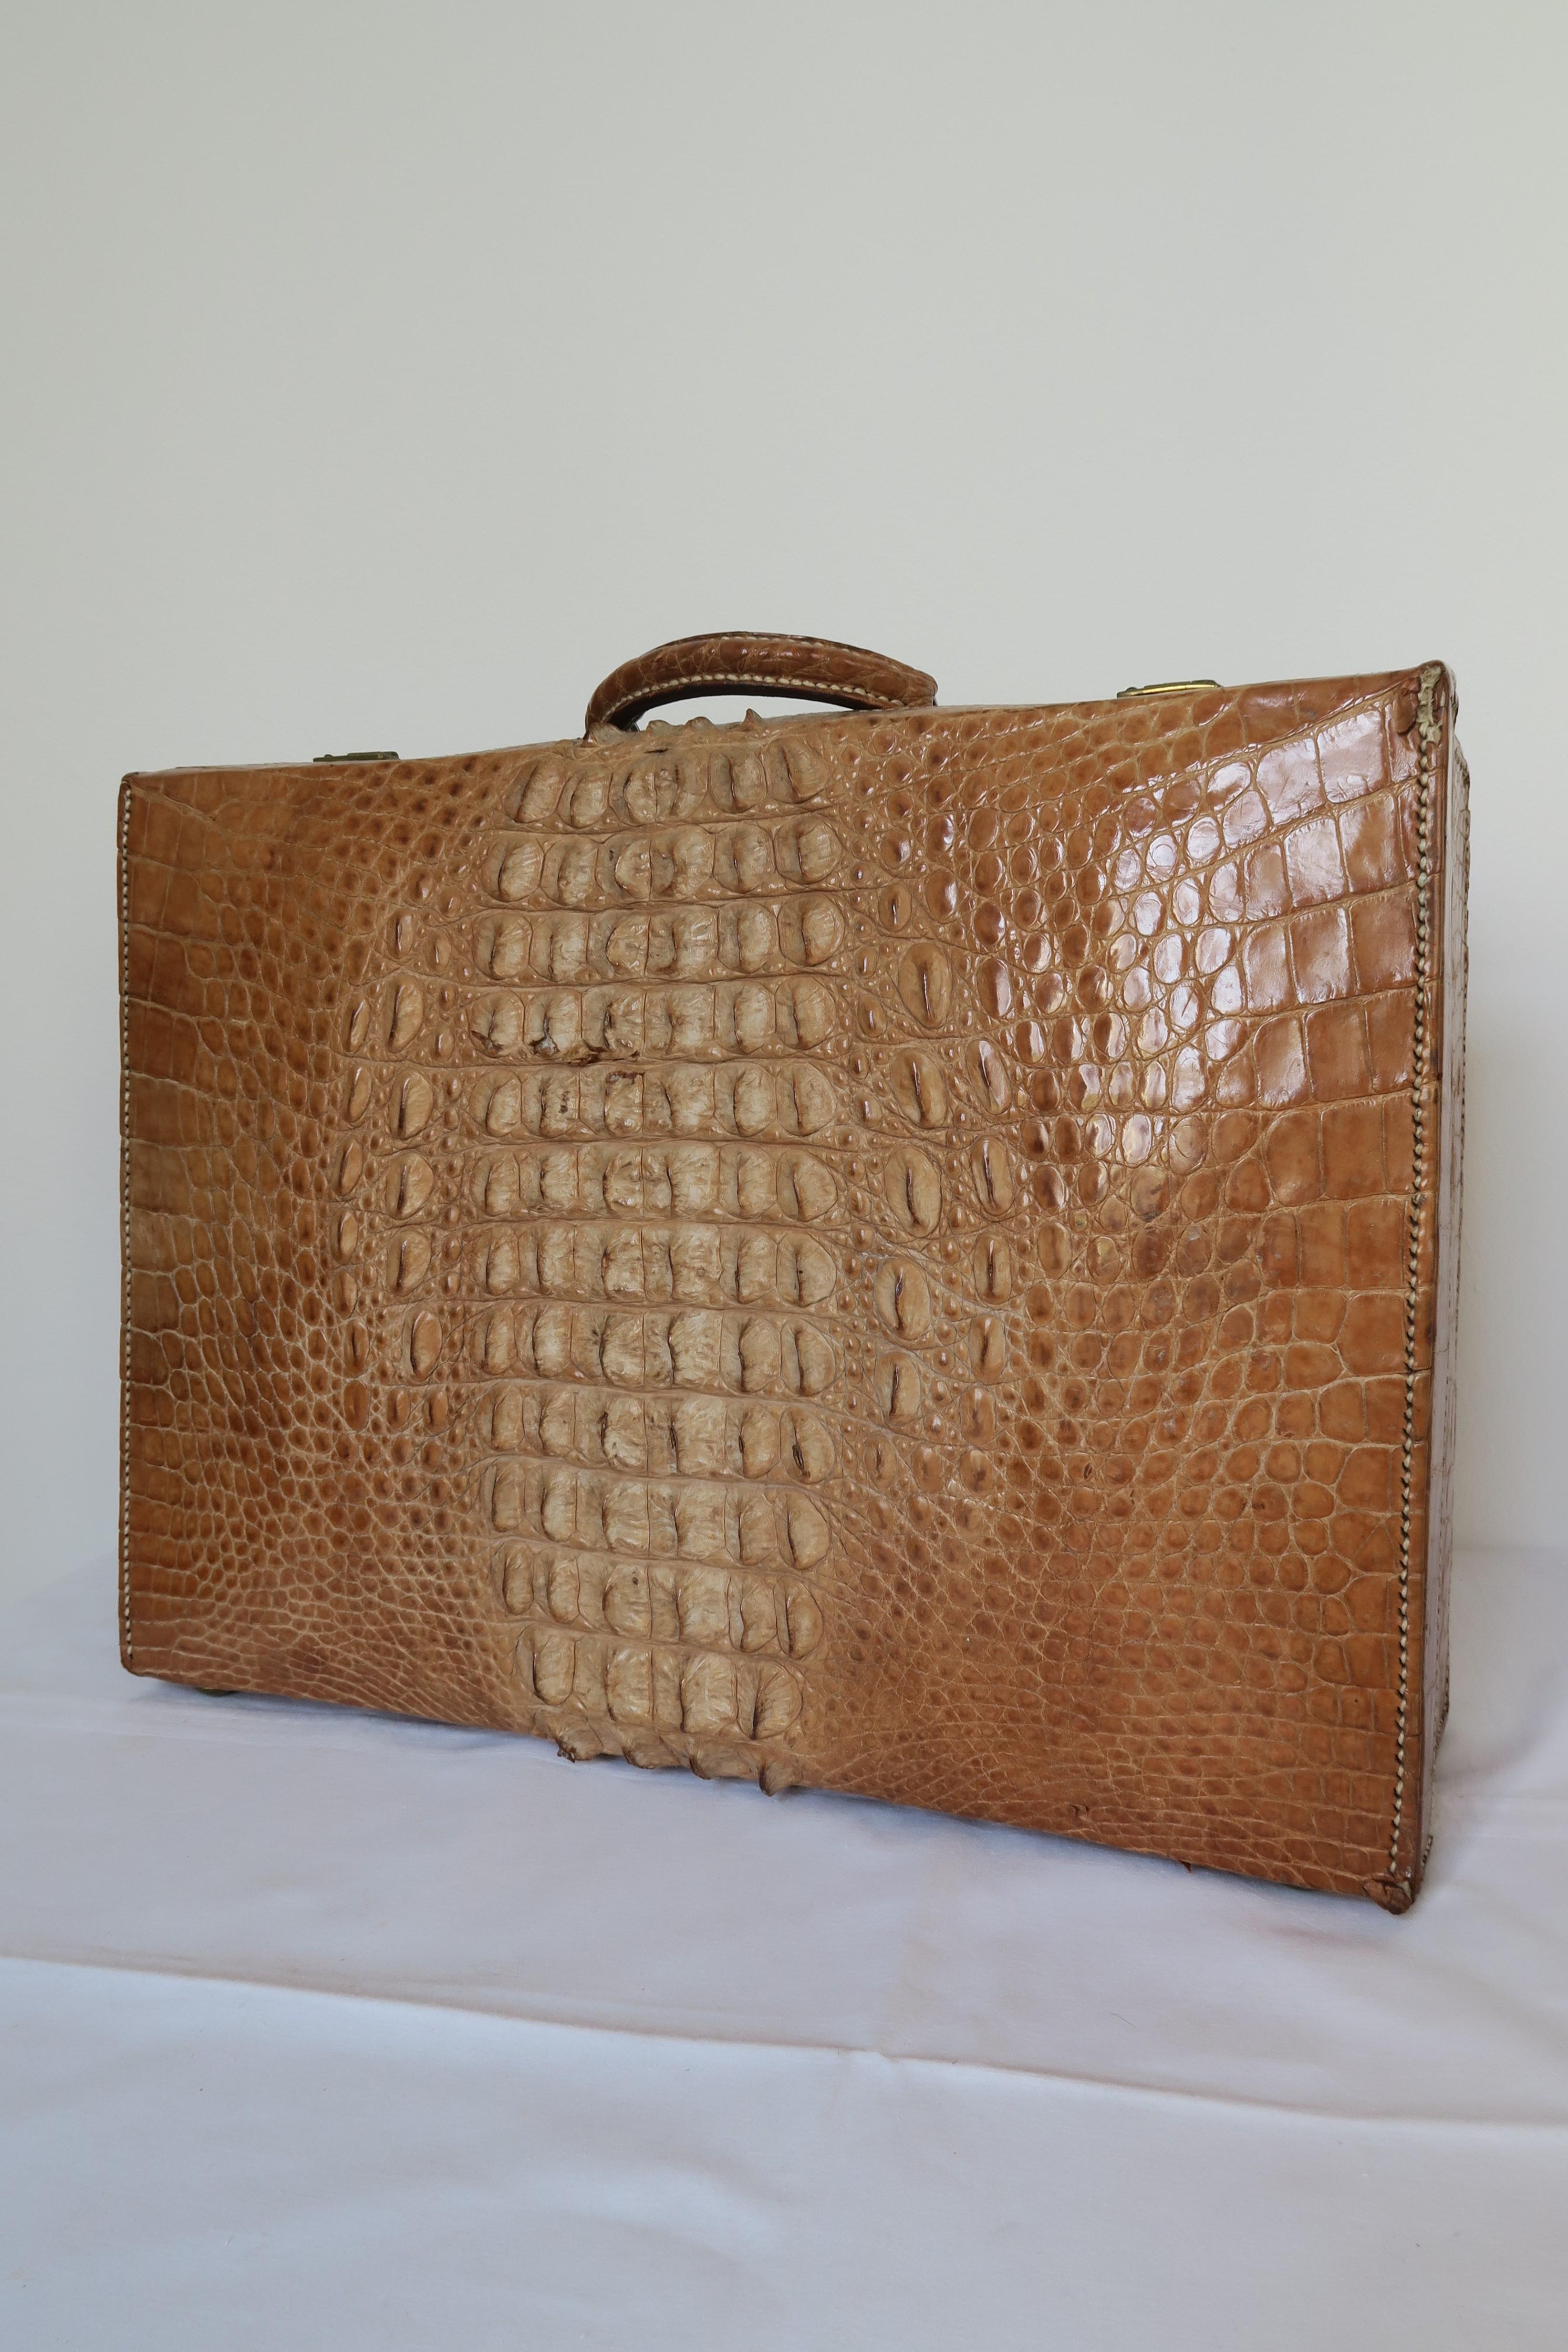 Dans cette annonce, vous avez la possibilité d'acheter une vieille valise en crocodile africain provenant d'Angleterre. La peau présente une teinte bronzée rare et des pointes magnifiquement prononcées sur la face supérieure de la valise. Les